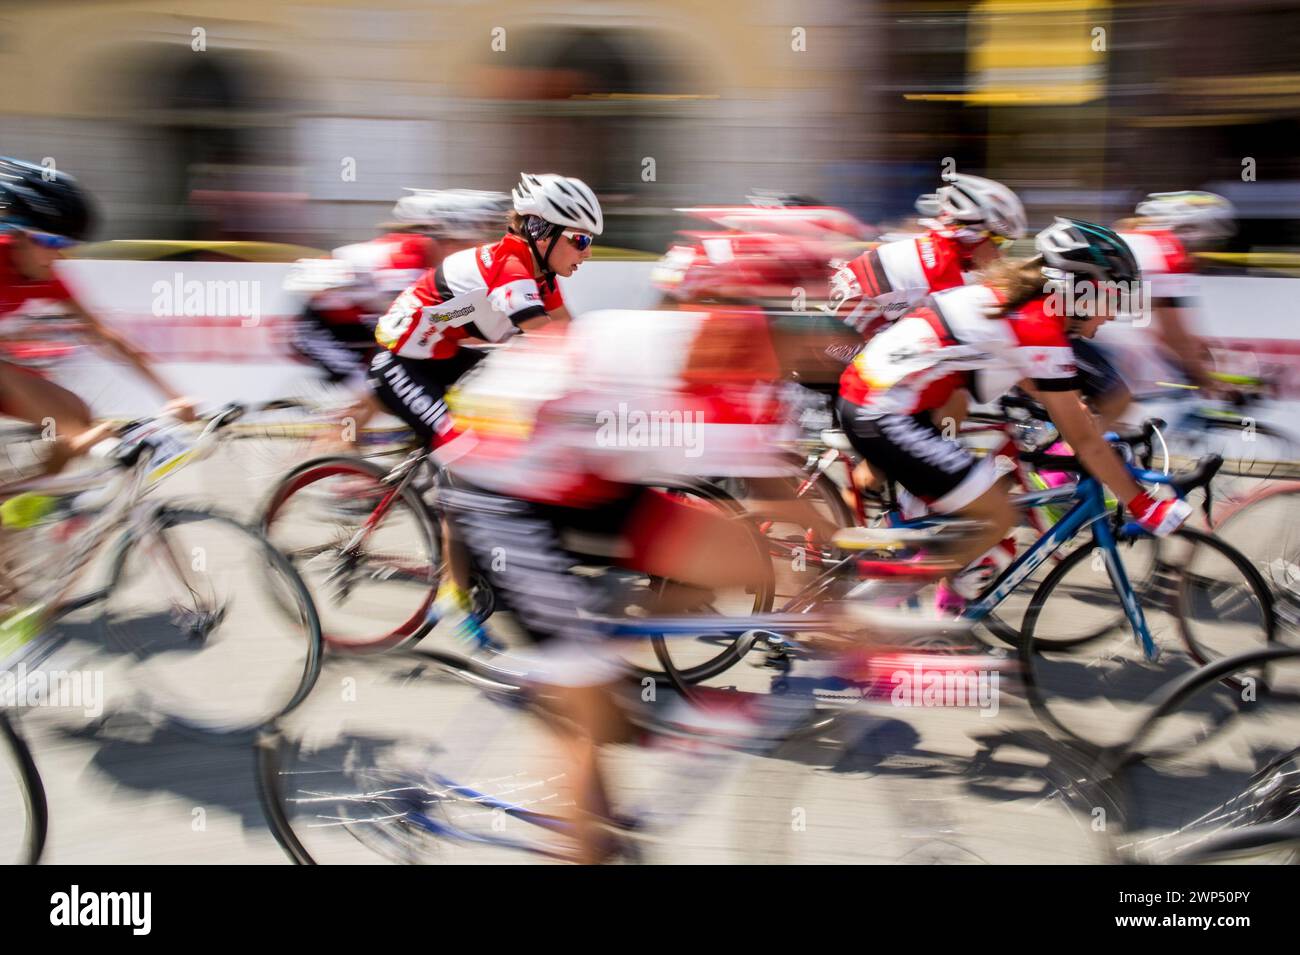 CRACOVIA, POLONIA - 8 AGOSTO 2015: Gara ciclistica Tour de Pologne 2015 per le strade della città di Cracovia in Polonia, motion blur Foto Stock